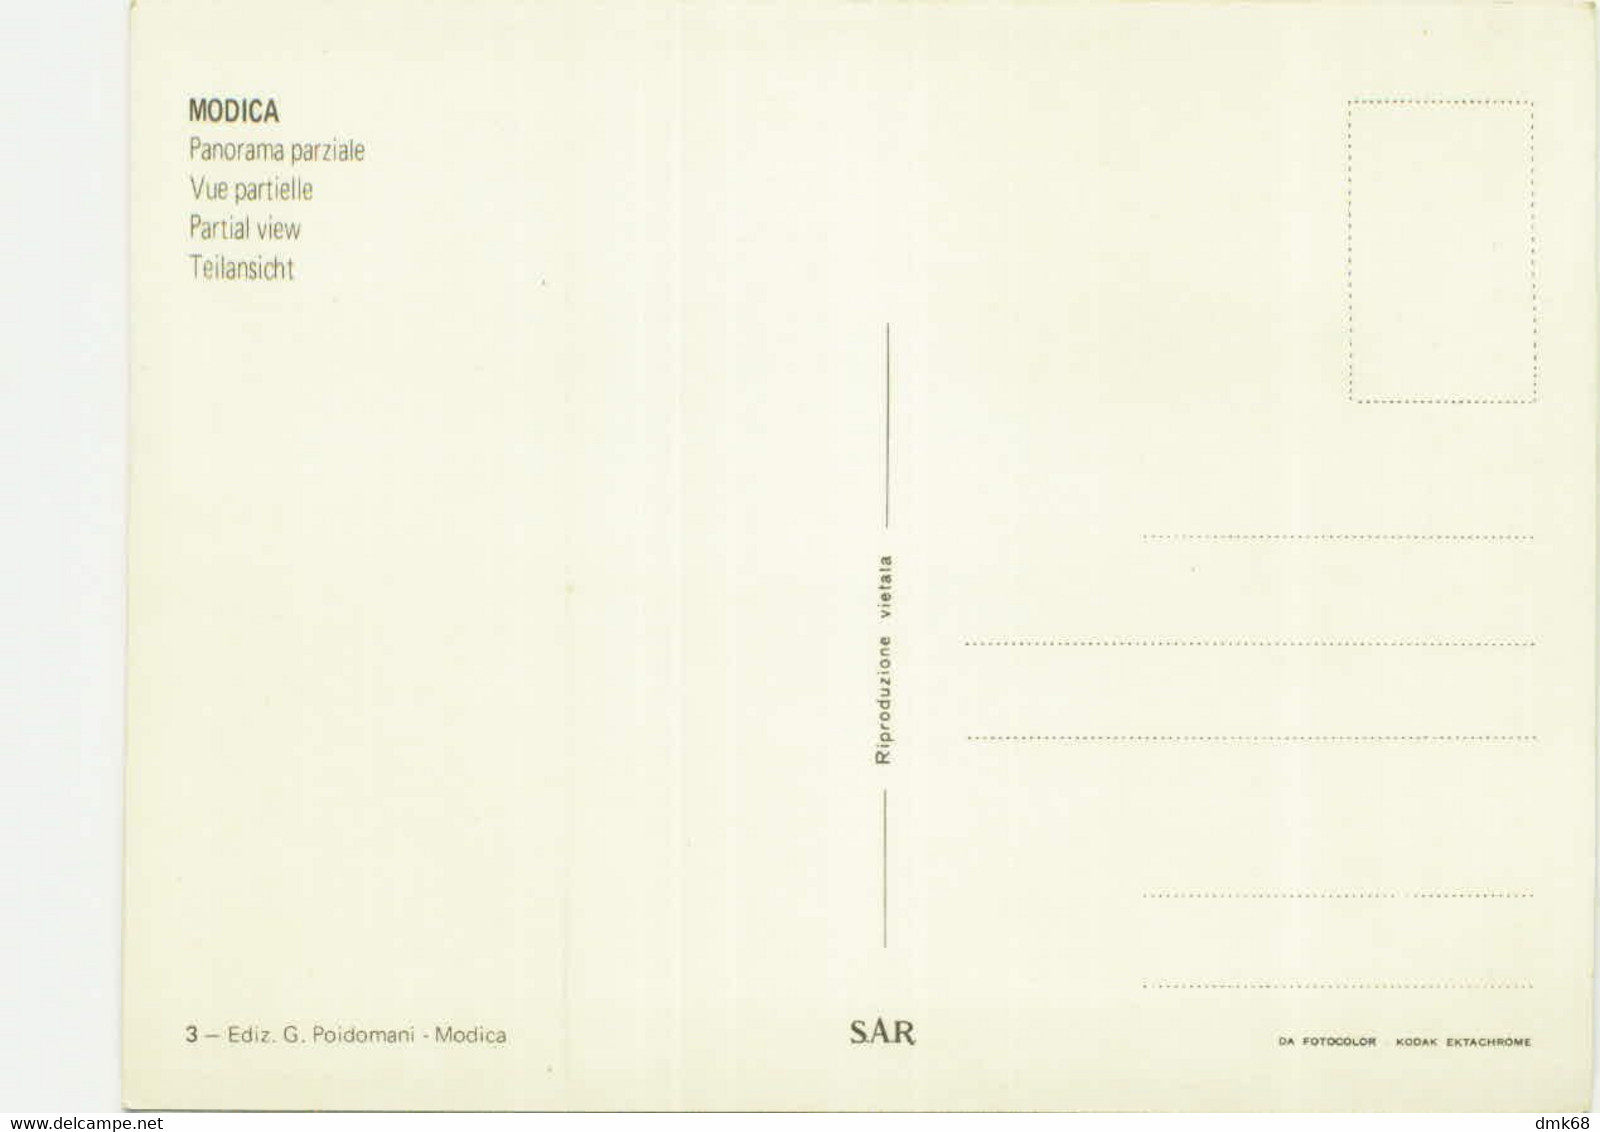 MODICA ( RAGUSA ) PANORAMA PARZIALE - EDIZIONE POIDOMANI - 1970s (6465) - Modica